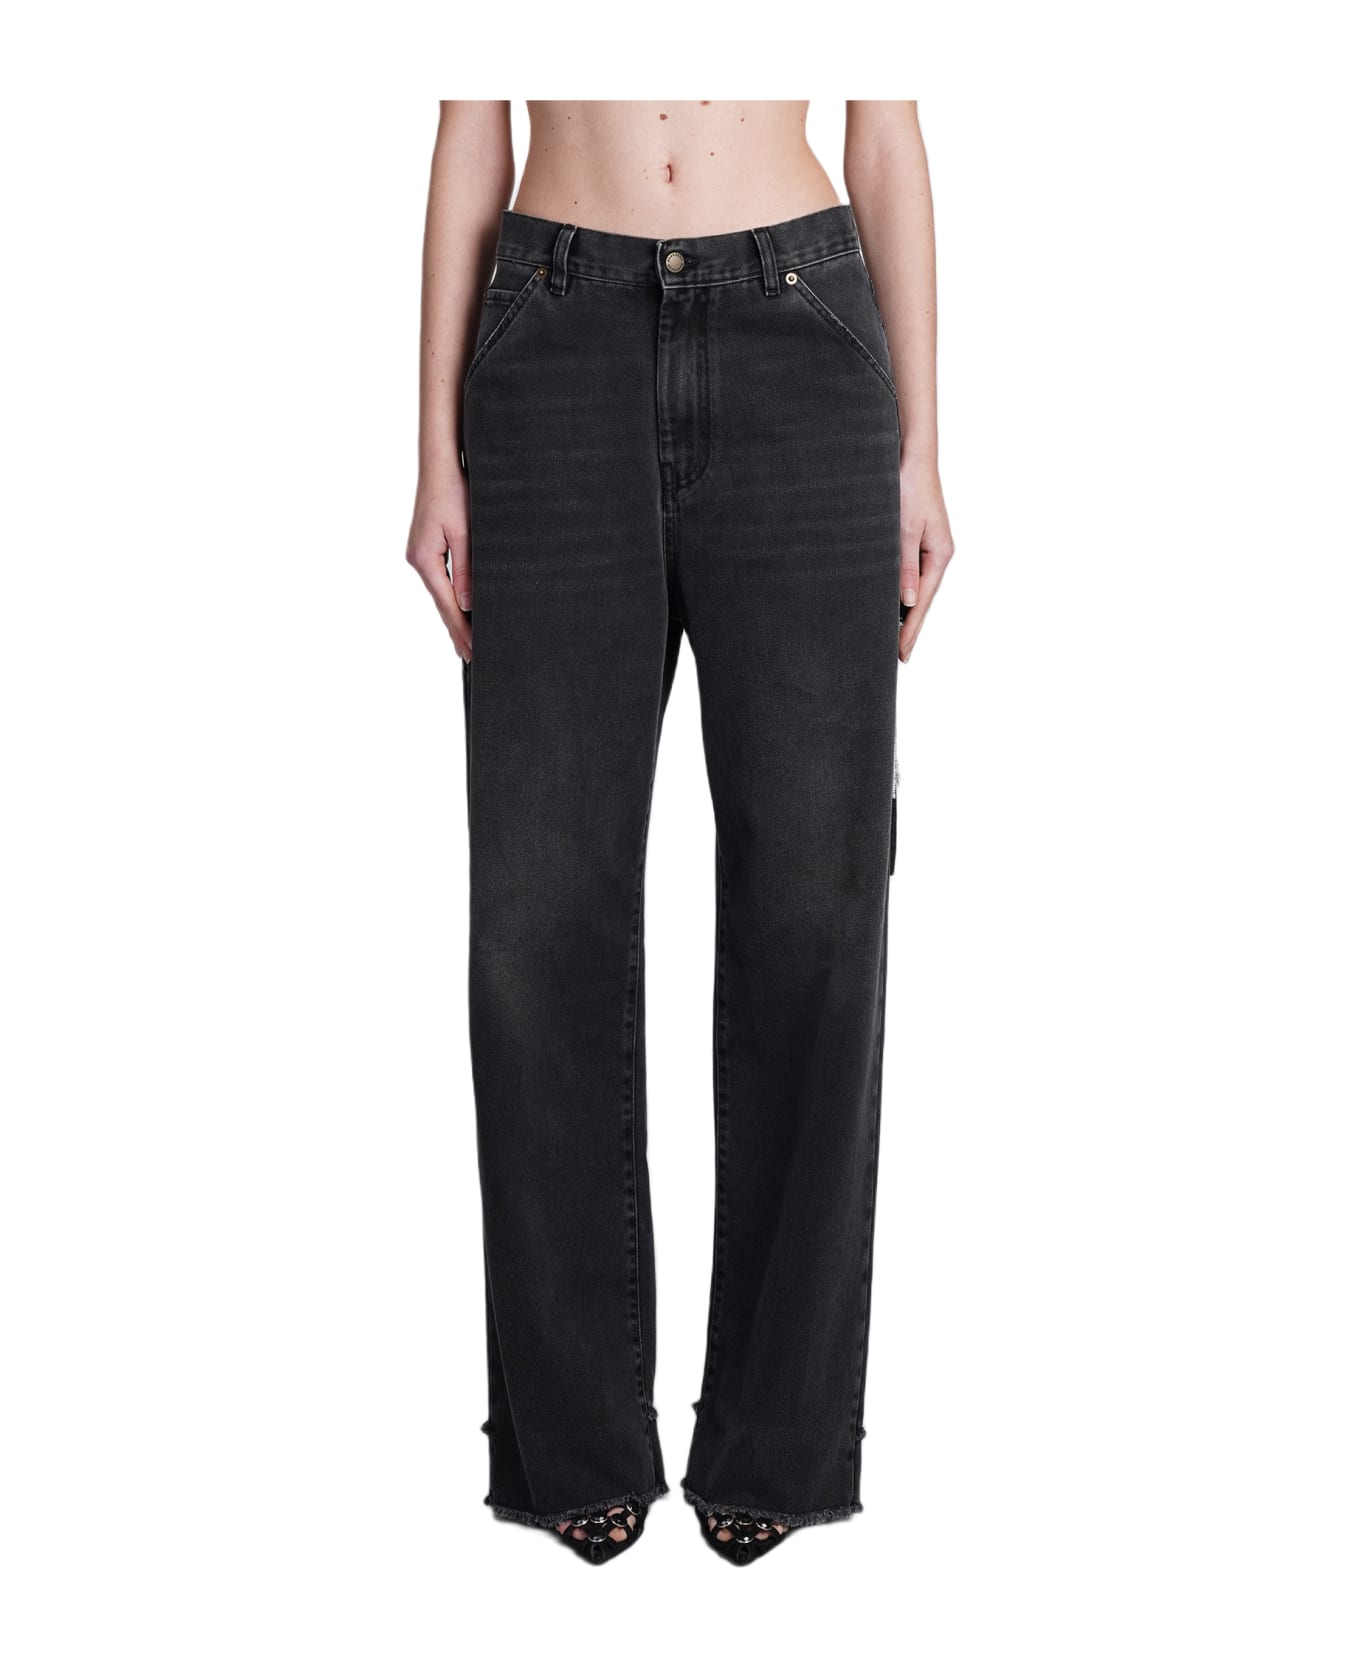 DARKPARK Lisa Jeans In Black Cotton - black